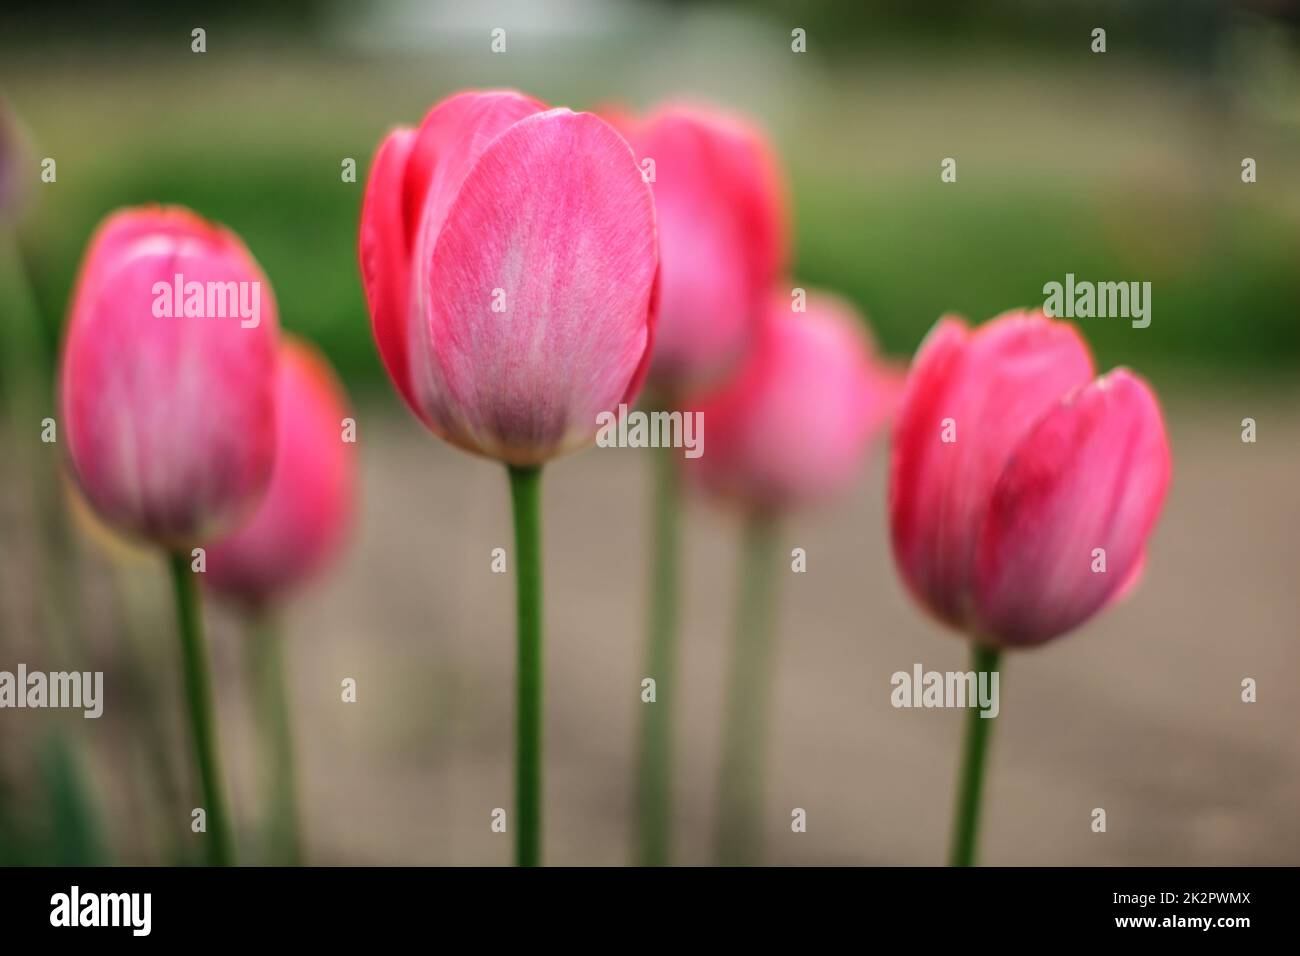 Profondeur de champ photo, qu'un seul pétale dans focus, les jeunes des tulipes roses fleurs. Résumé Contexte flowery au printemps. Banque D'Images